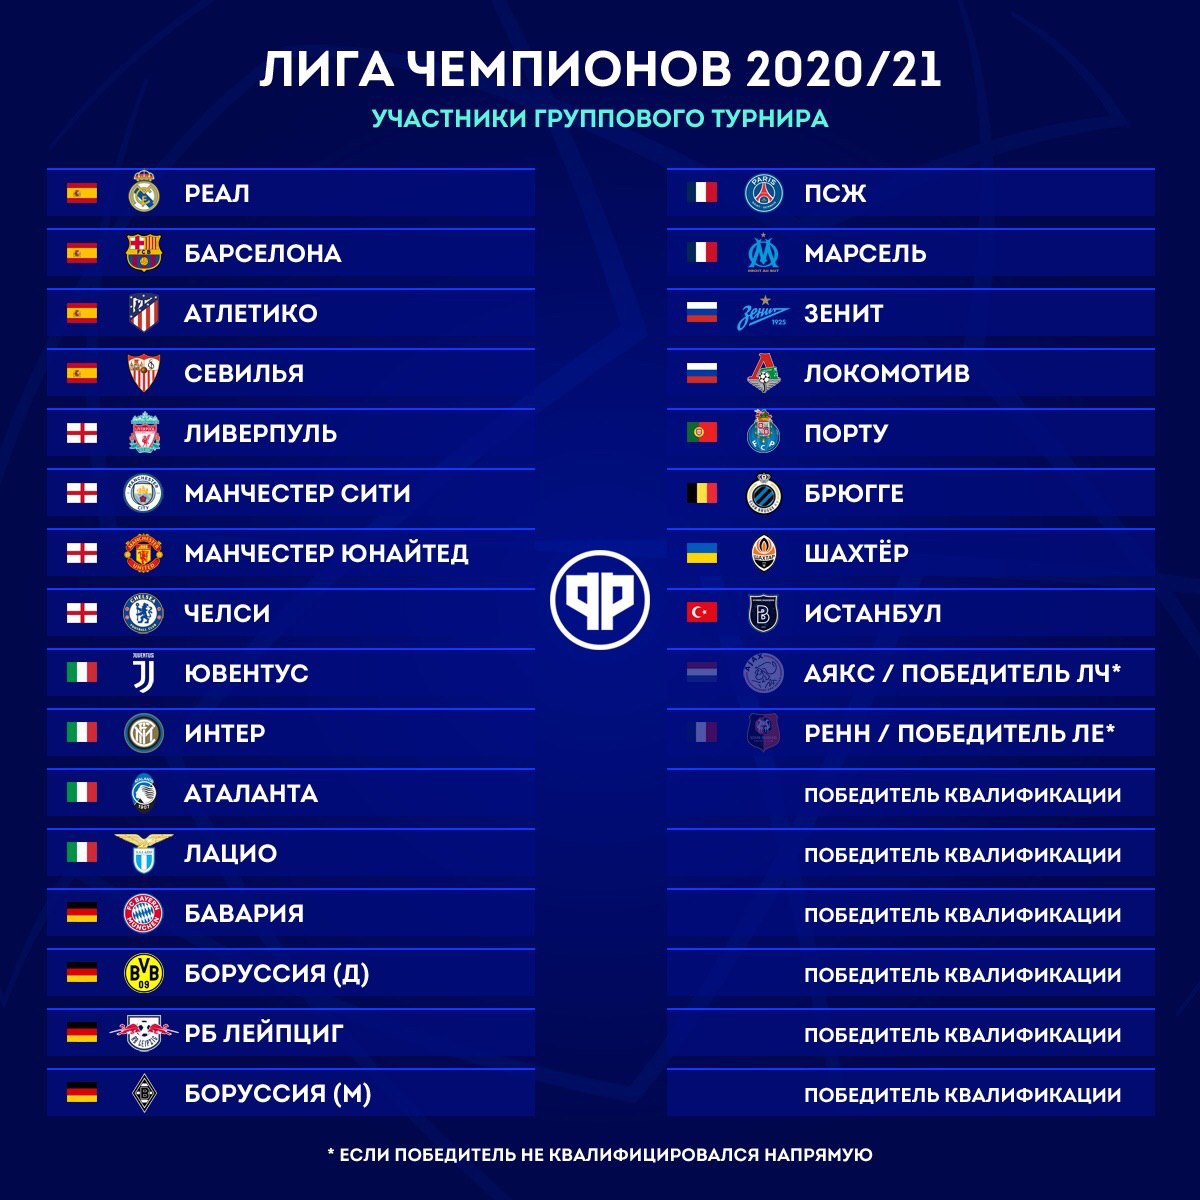 Когда начинается чемпионат лига. Лига чемпионов 2020 таблица. Лига чемпионов 2021-2022 турнирная таблица. Лига чемпионов турнирная таблица 2020-2021. Тазбльтца лига чемпион.